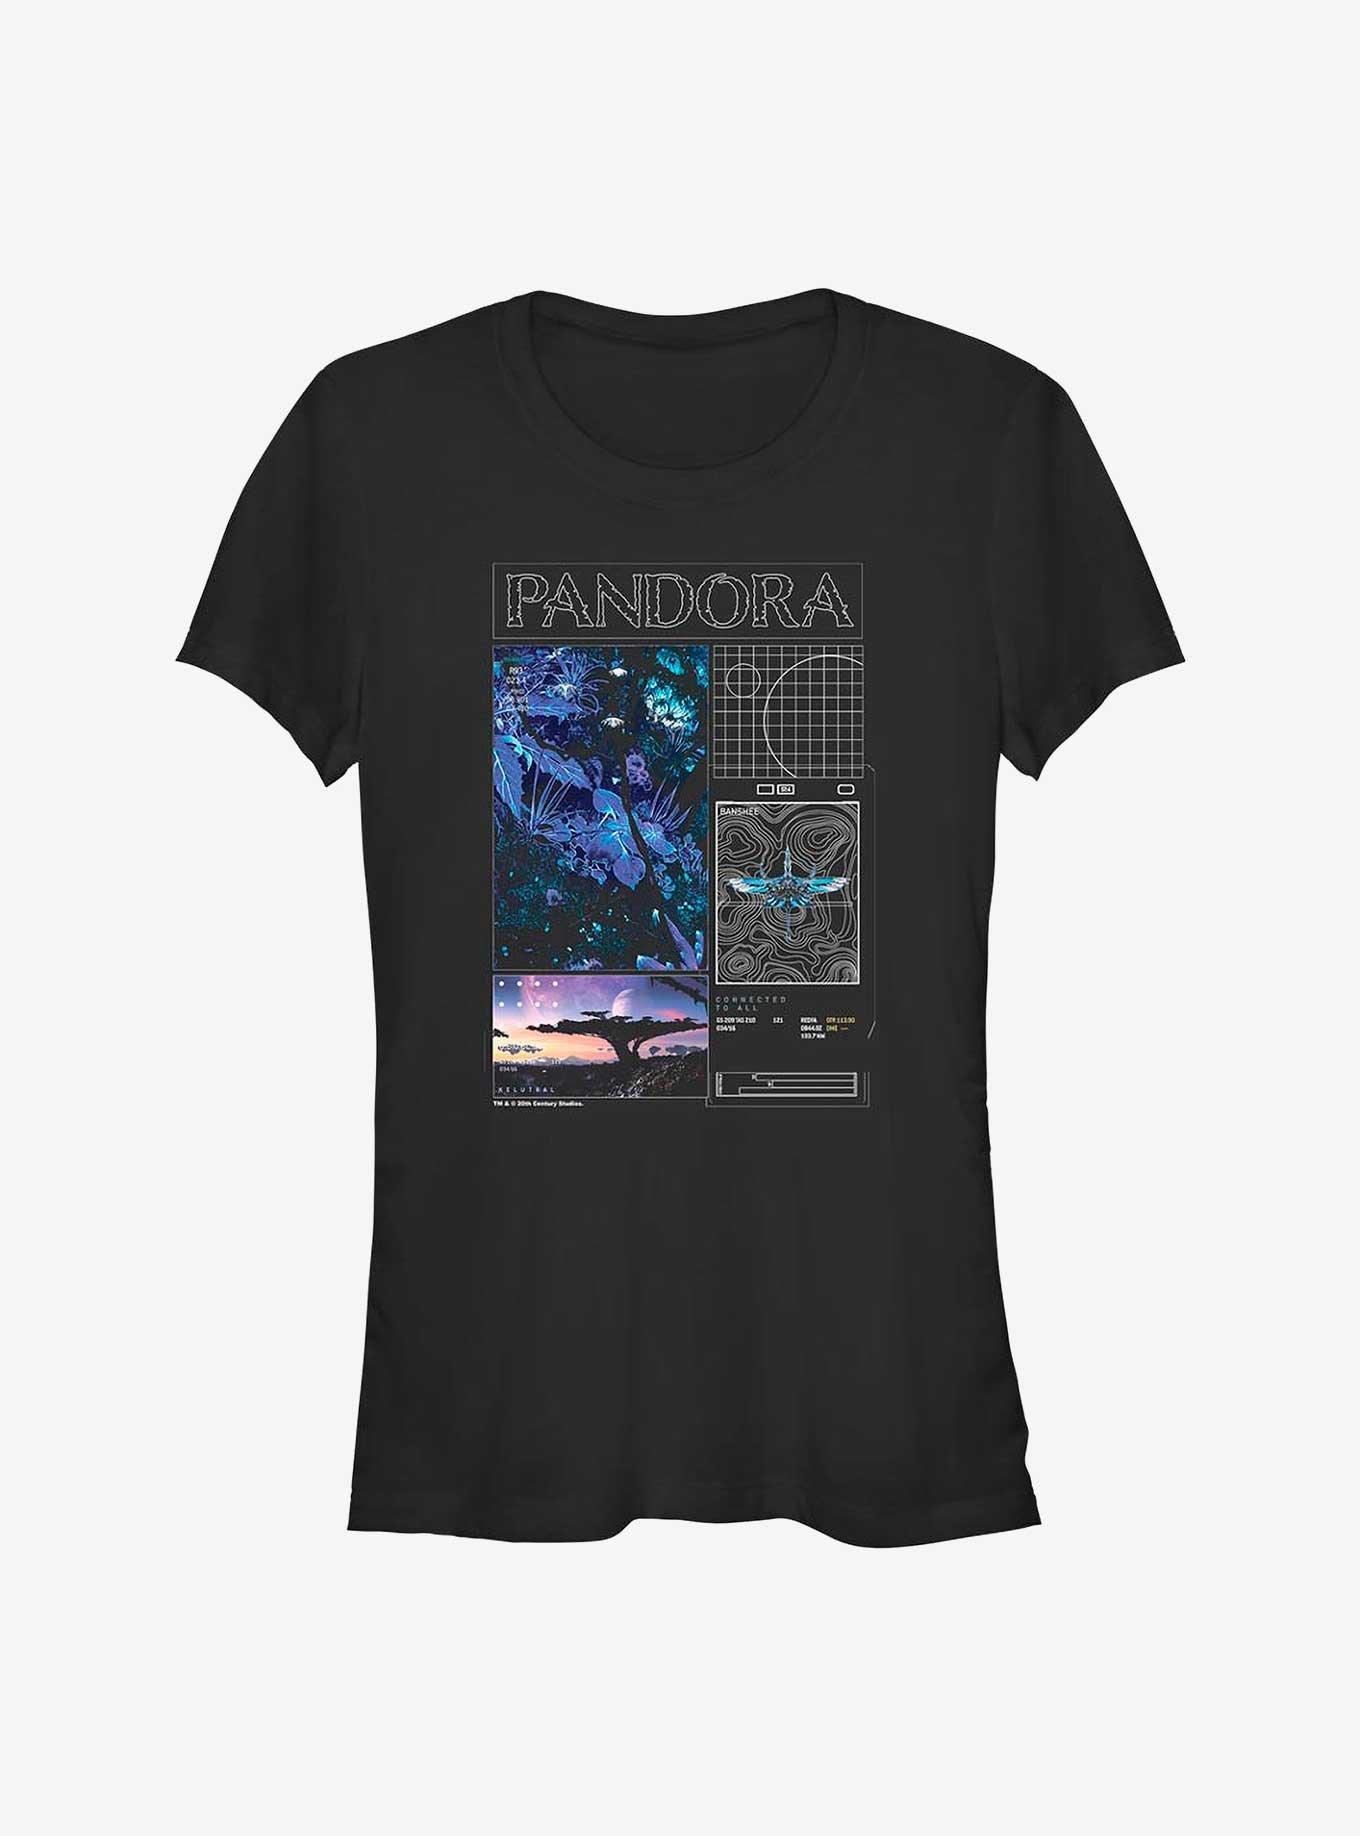 Avatar Pandora Schematic Girls T-Shirt, BLACK, hi-res